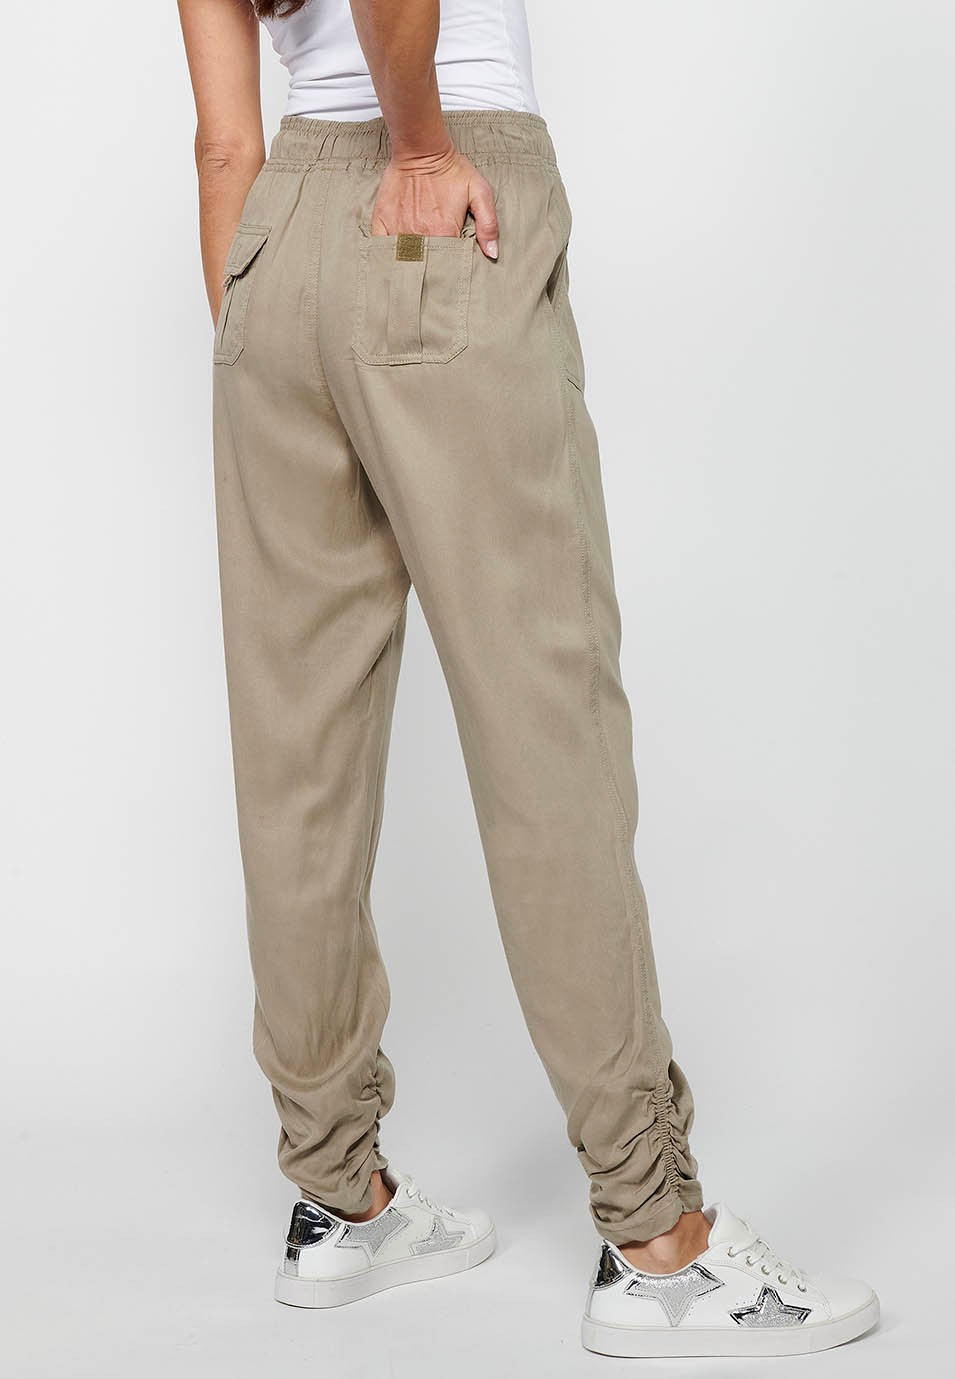 Pantalón largo jogger con Acabado rizado y Cintura engomada con Cuatro bolsillos, dos traseros con solapa de Color Gris para Mujer 5